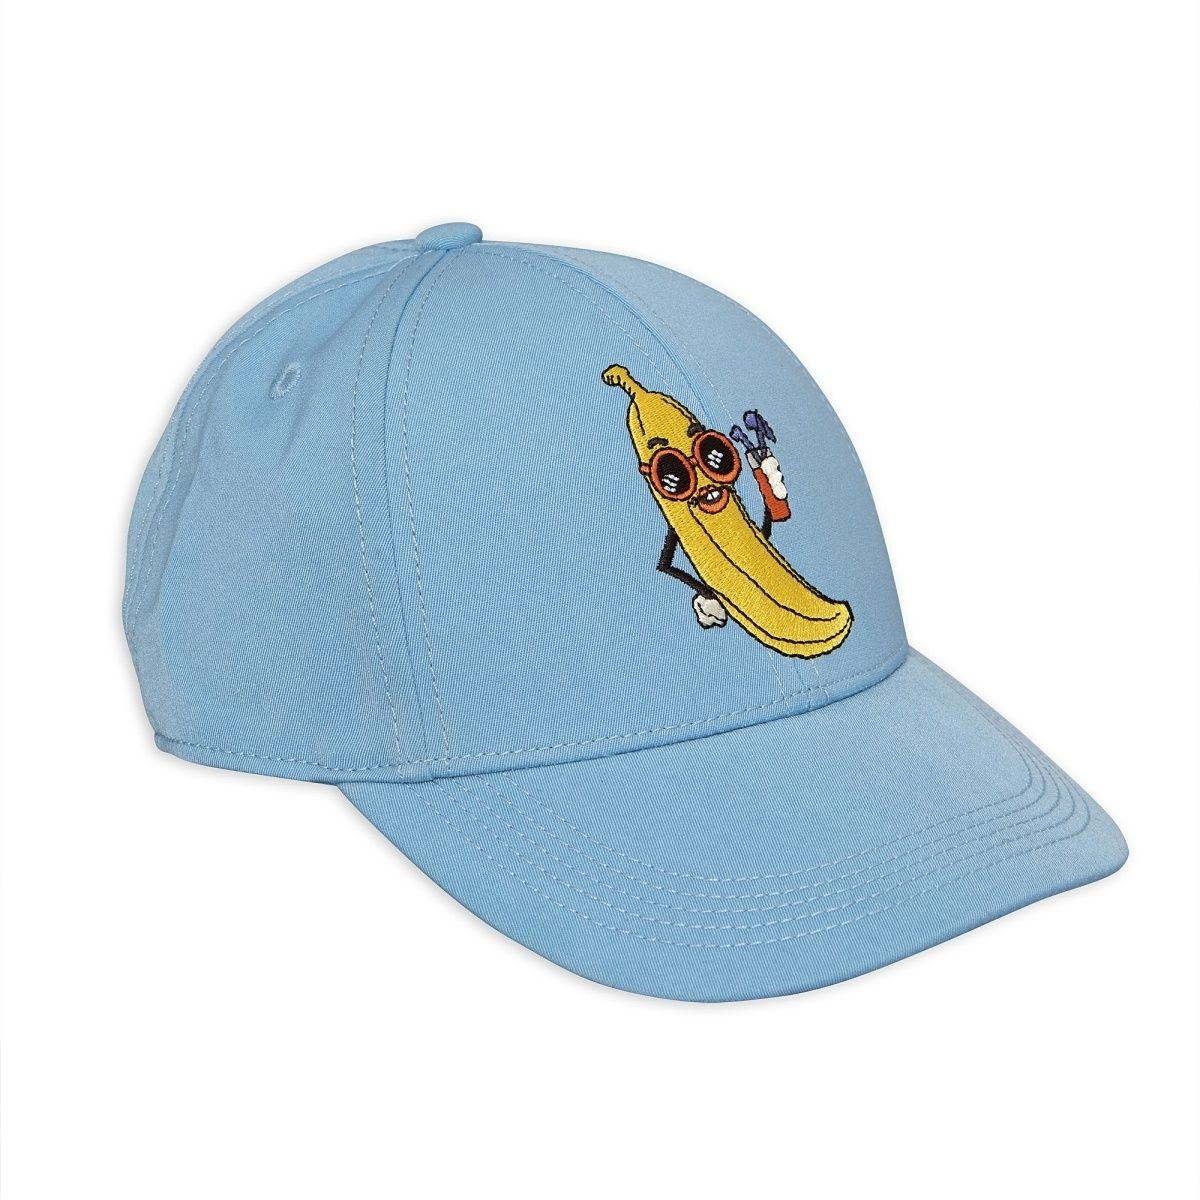 zeker Zenuw ik ben trots Mini Rodini Banana Embroidery Cap blue